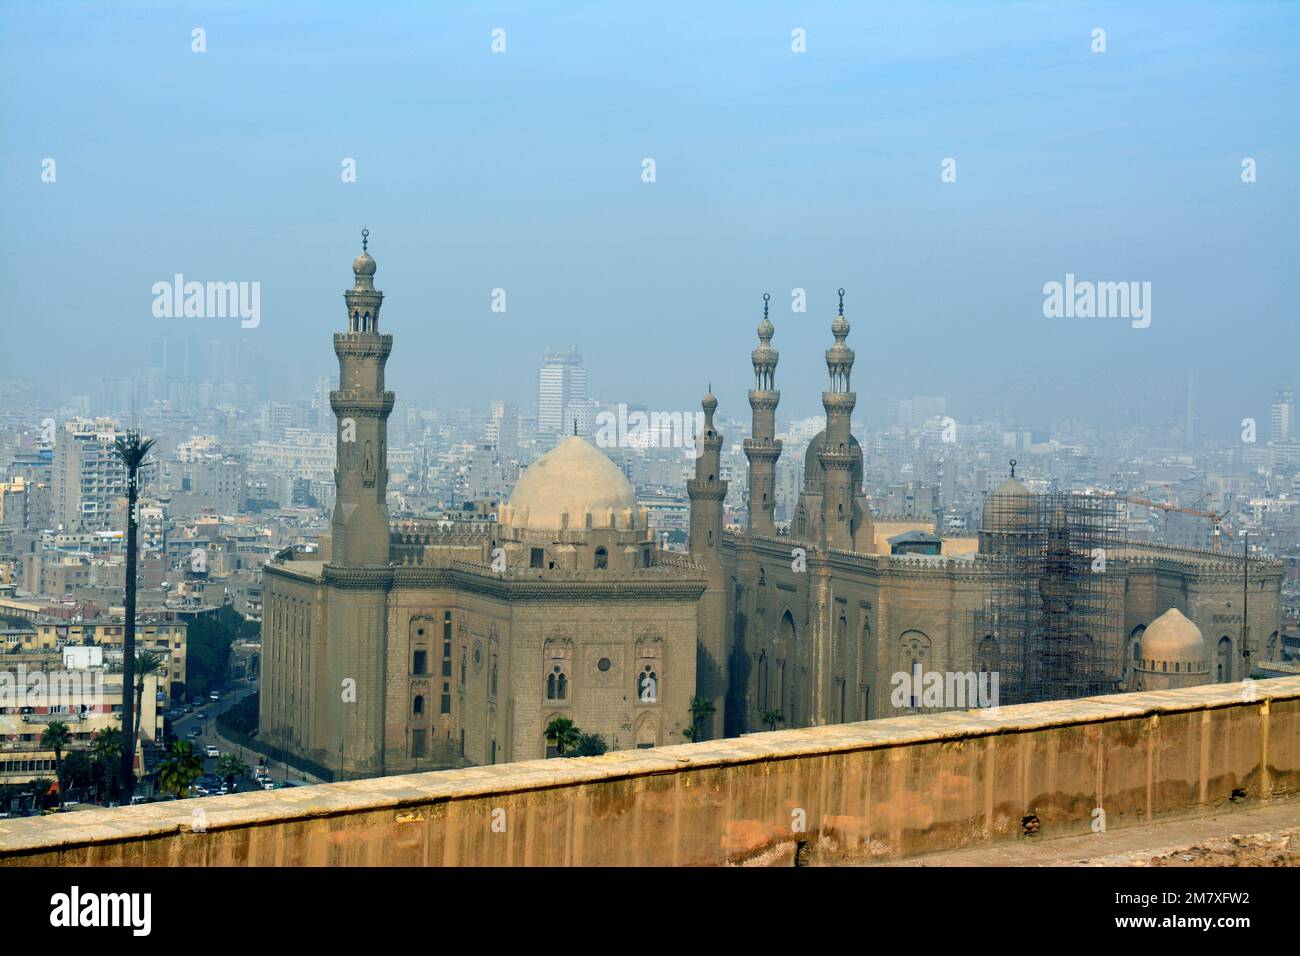 Le Caire, l'Egypte, 7 janvier 2023: Les mosquées du Sultan Hassan et d'Al Rifa'i dans l'ancienne place de la Citadelle du Caire, les mosquées islamiques très célèbres en Egypte et très clos Banque D'Images